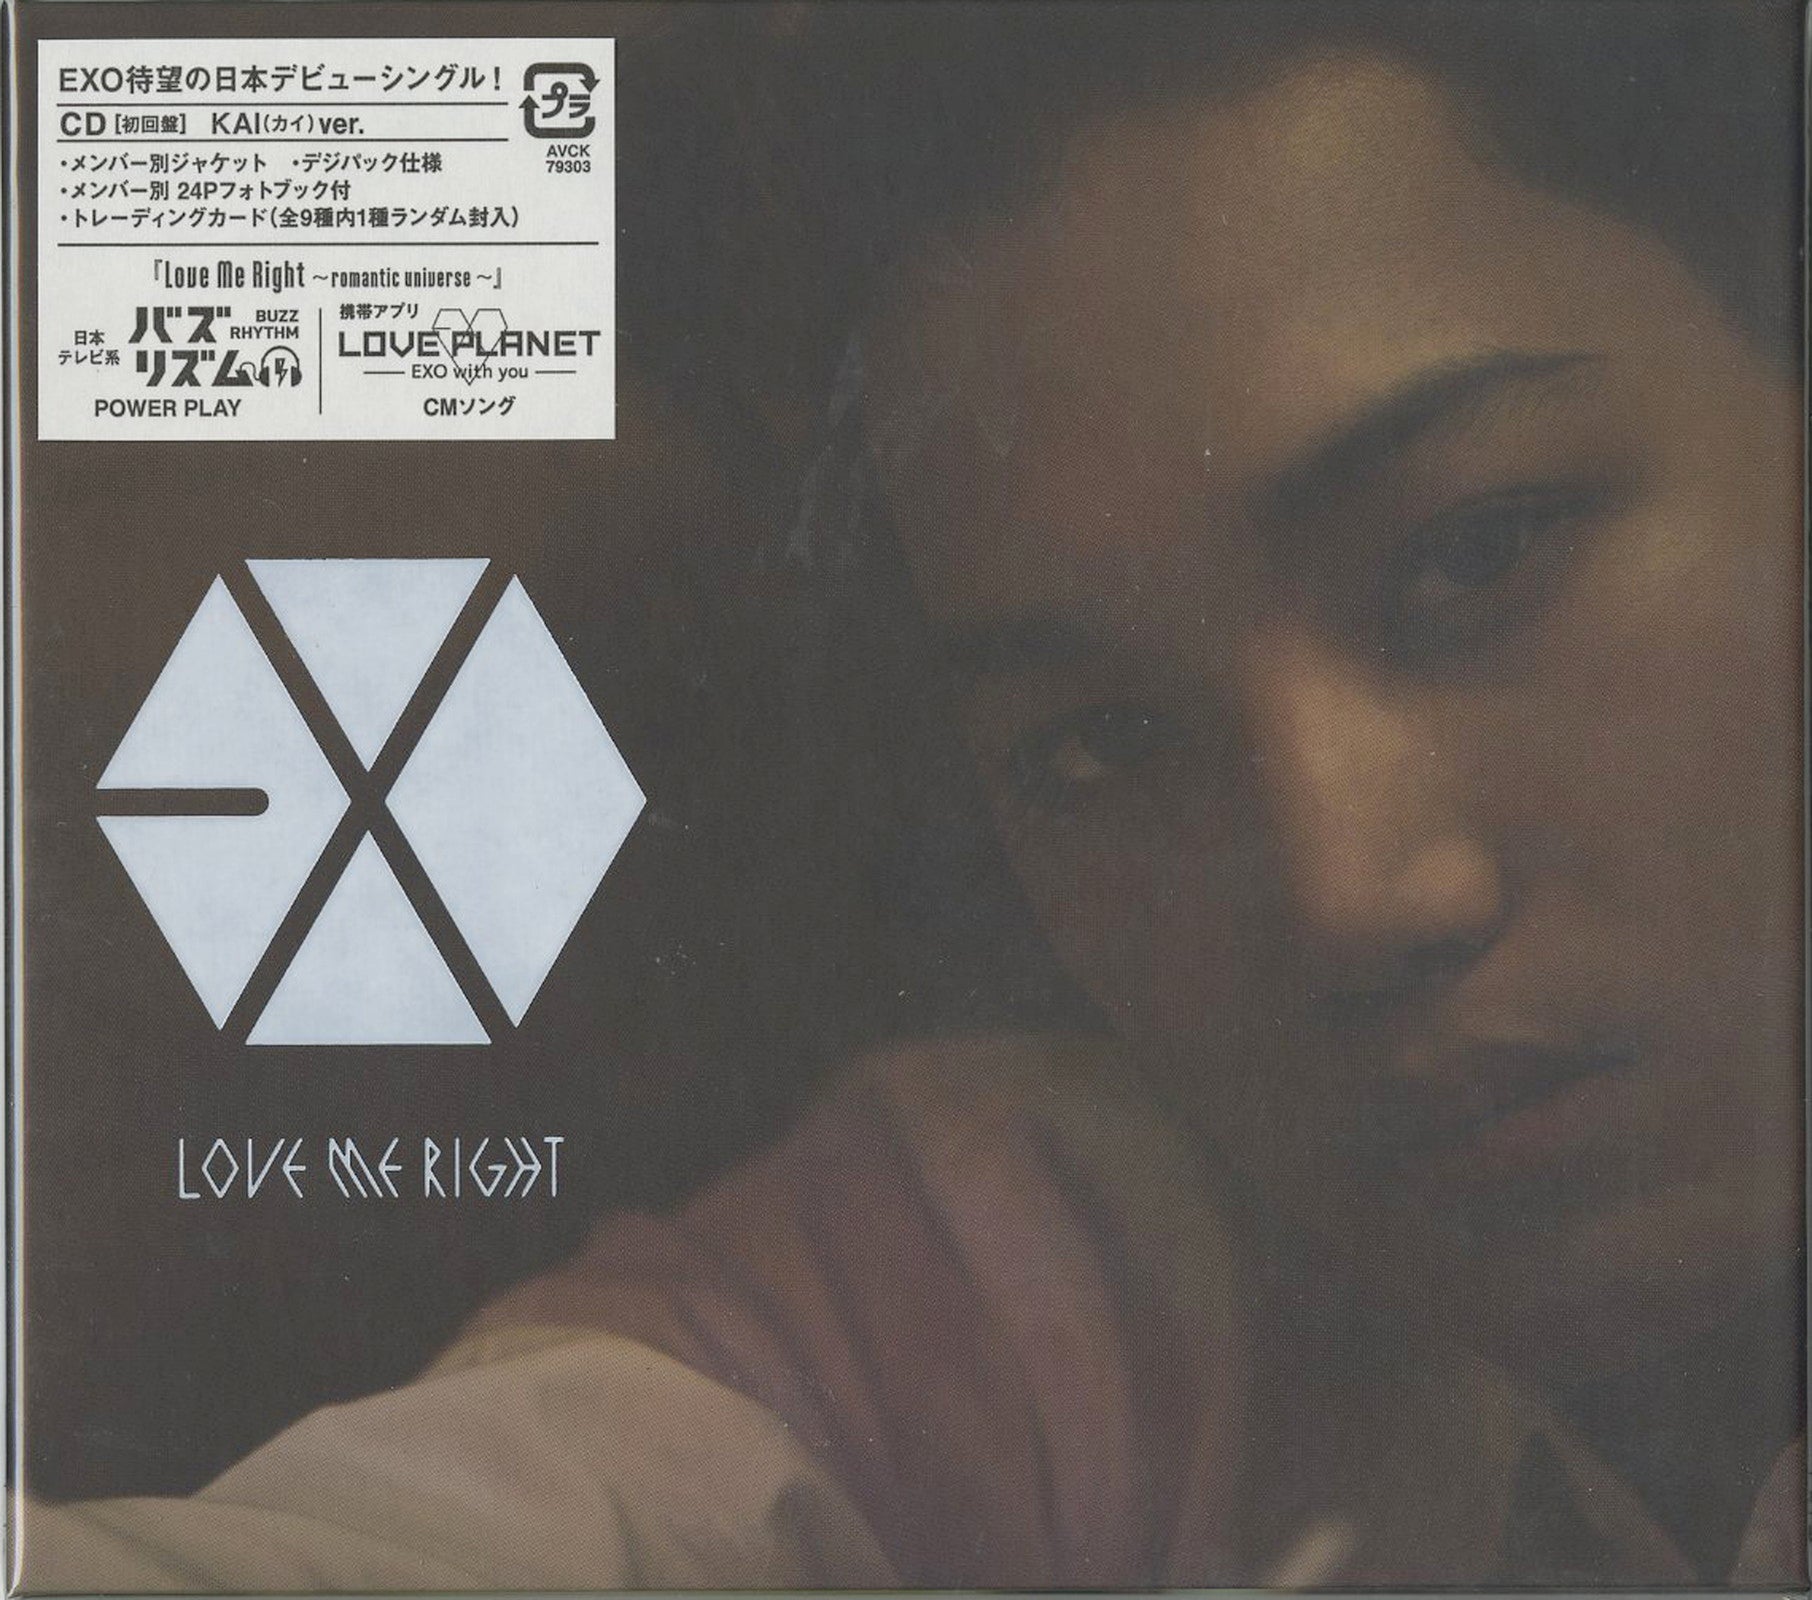 Exo - Love Me Right -Romantic Universe- (Kai Ver.) - Japan Digipak